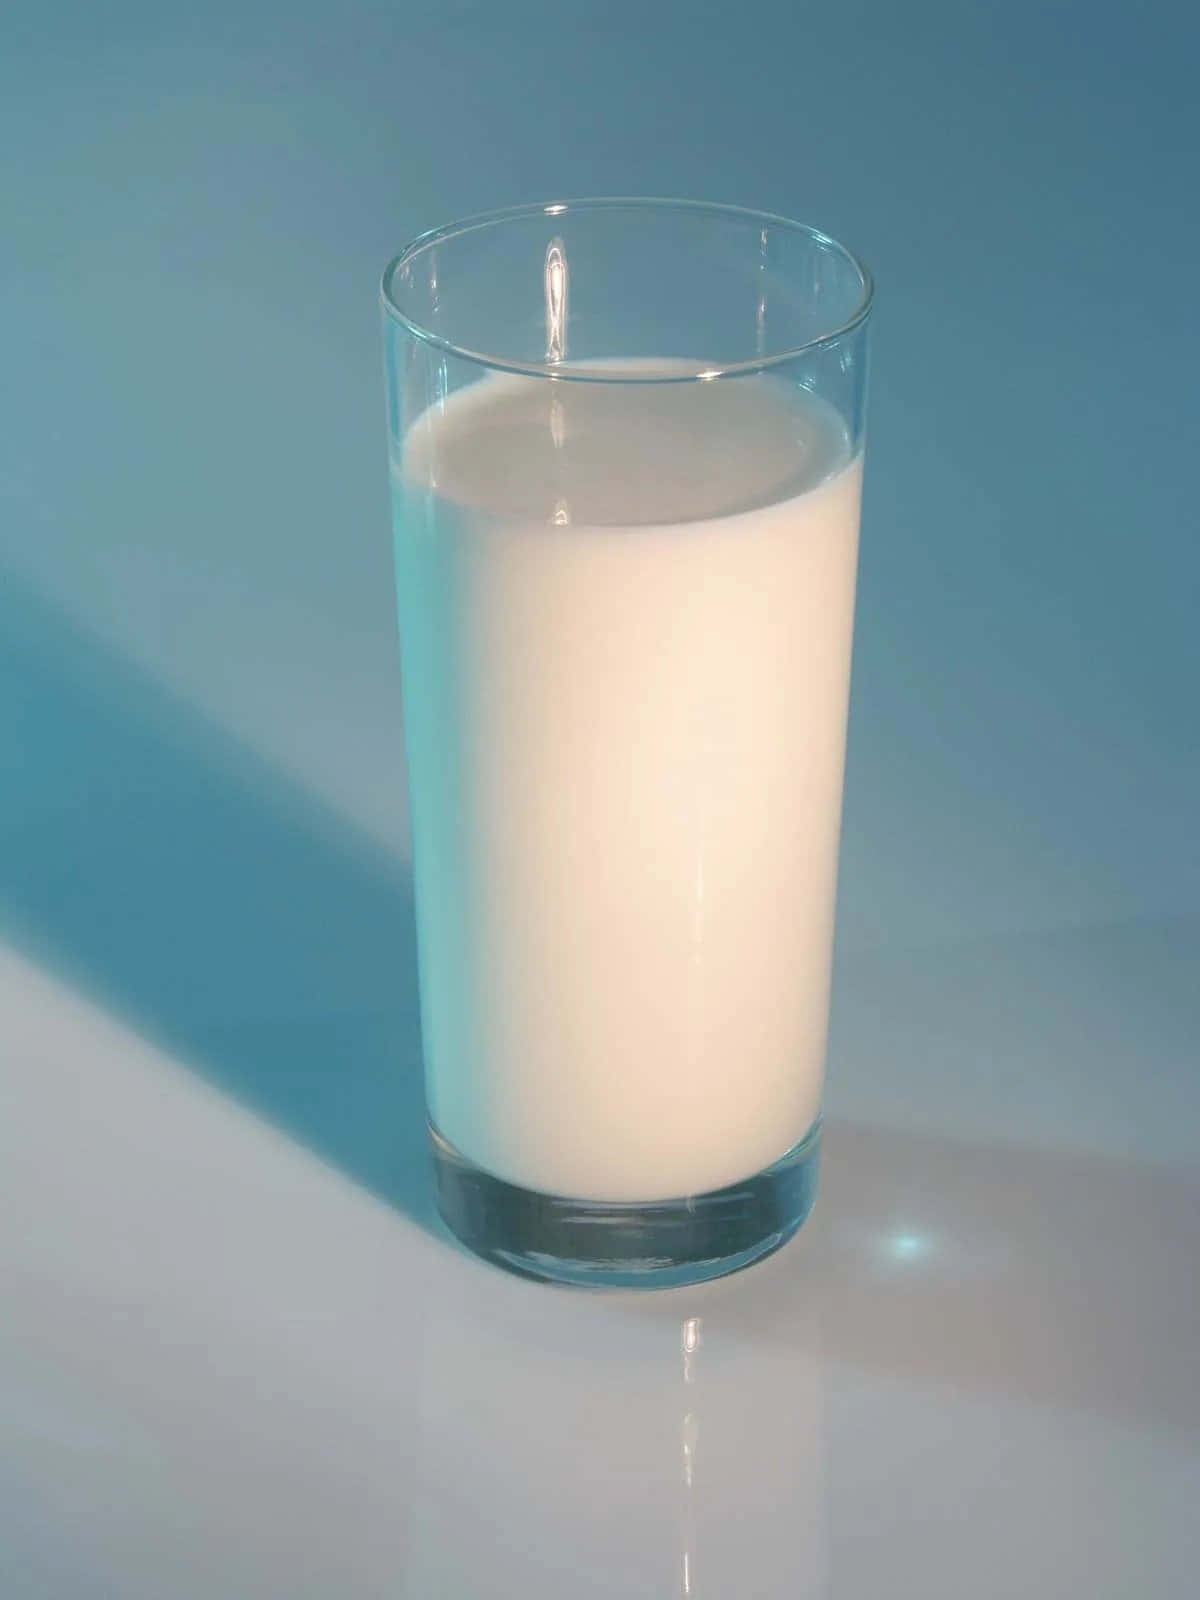 Milk Pictures